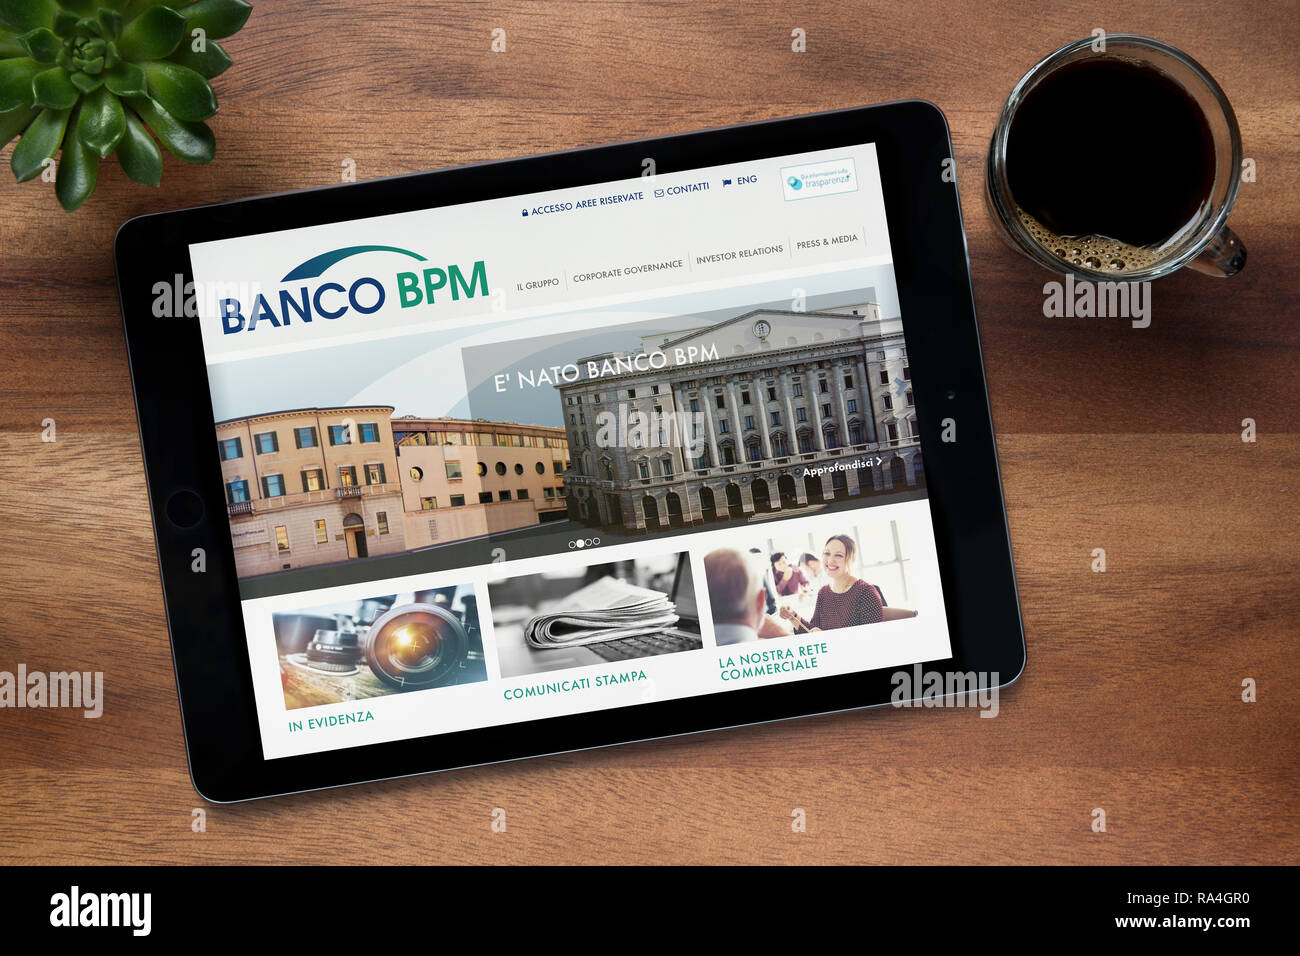 Banco bpm immagini e fotografie stock ad alta risoluzione - Alamy